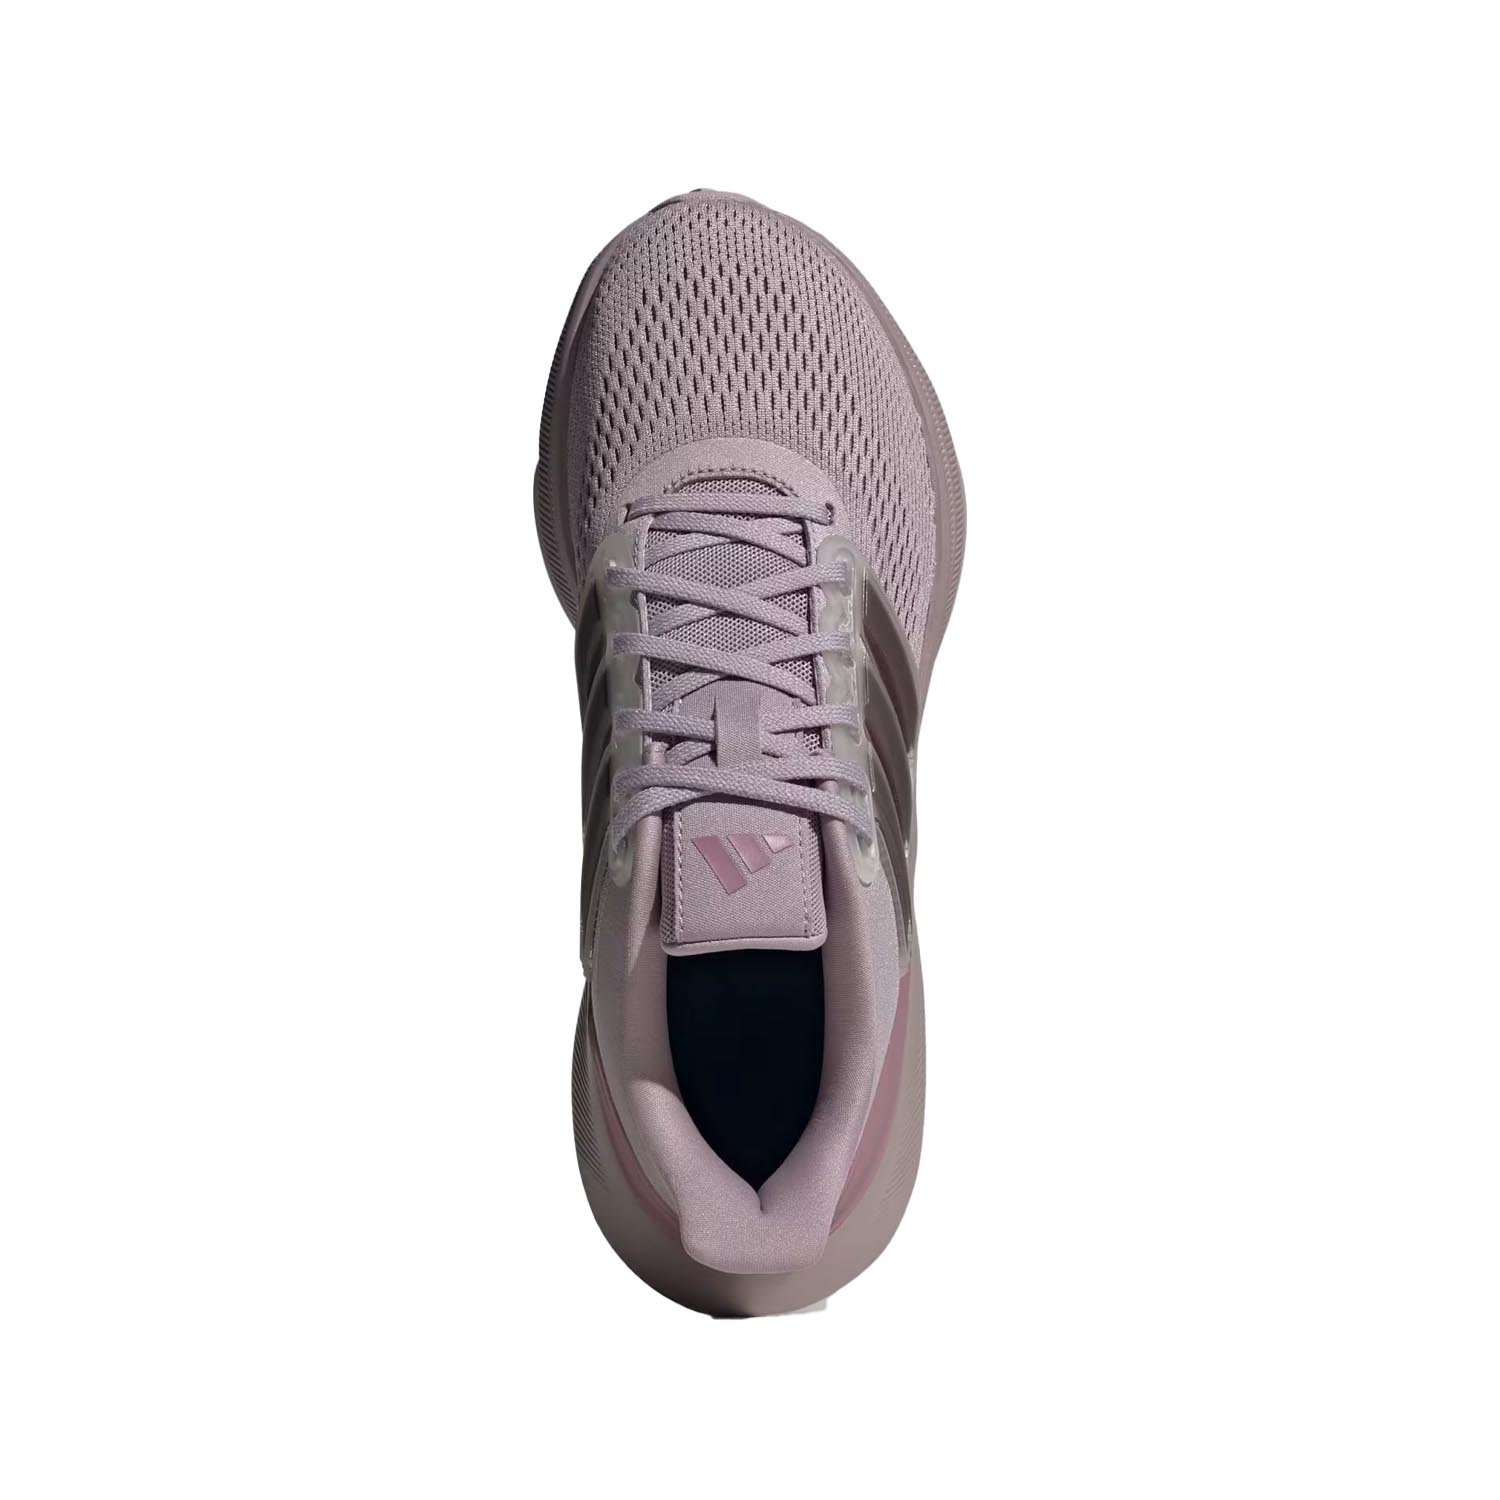 Adidas Ultrabounce Kadın Yol Koşu Ayakkabısı - Renkli - 1